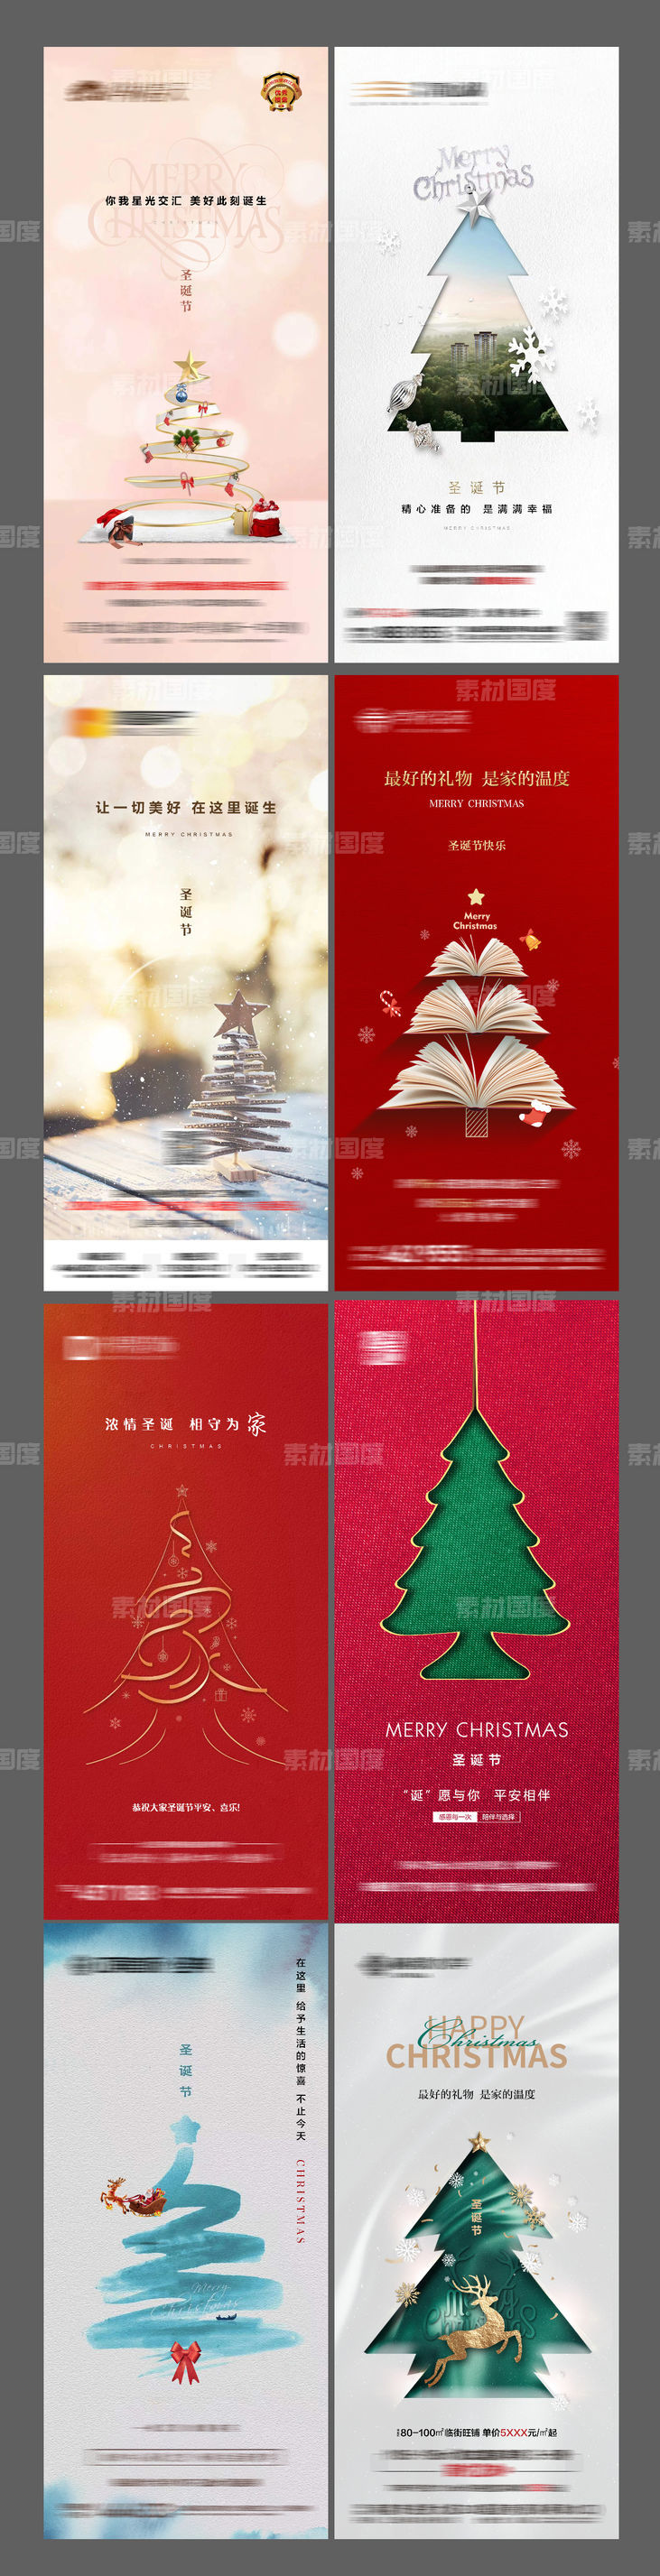 地产圣诞节节日海报